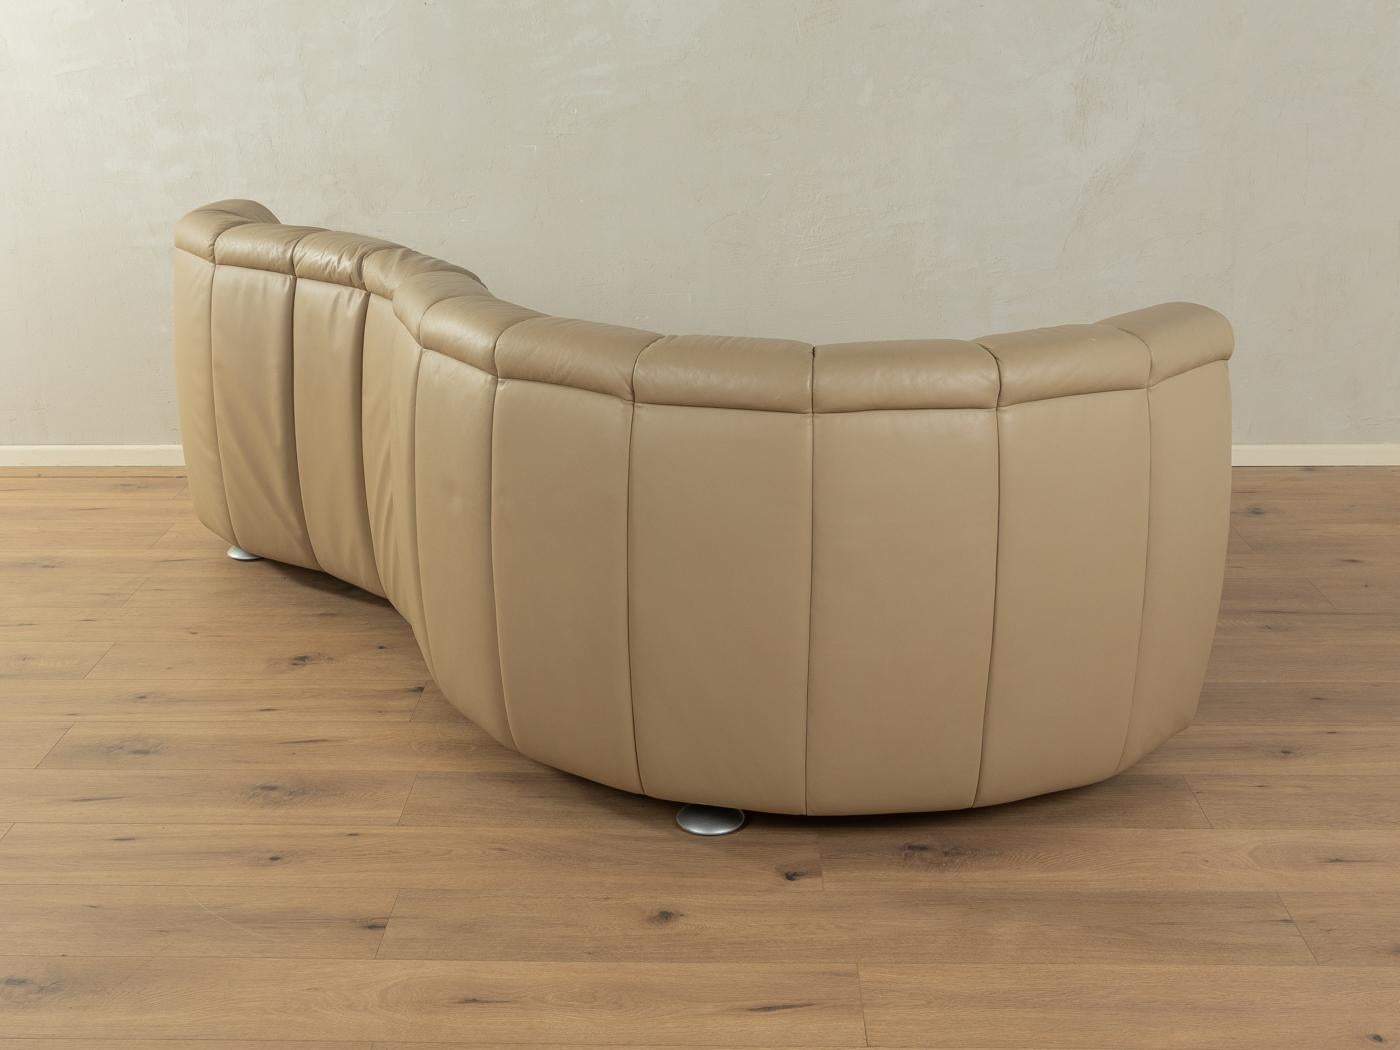 20th Century  Sofa, DS-164/30, de Sede  For Sale